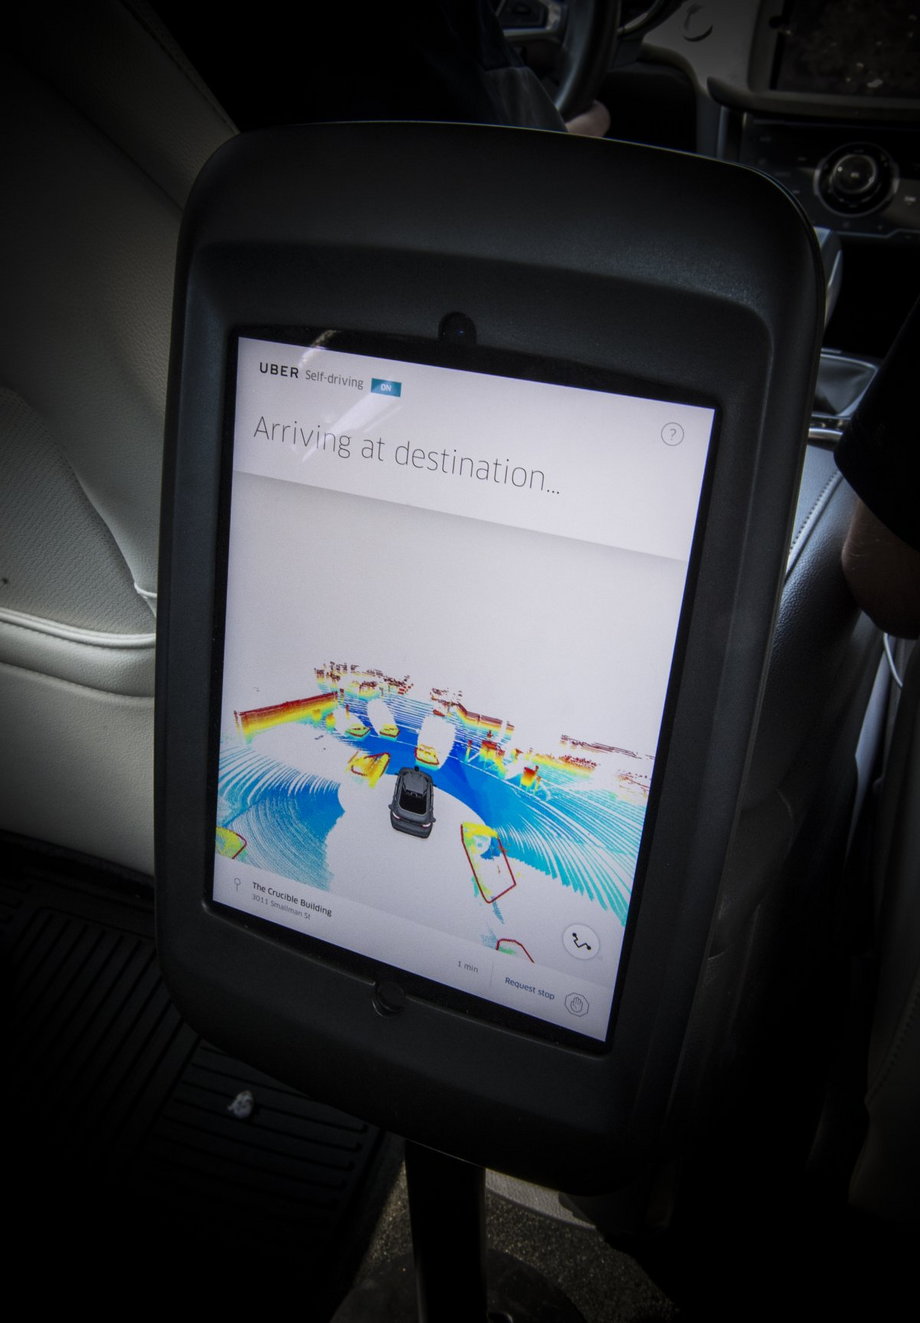 Podgląd z systemu LIDAR w autonomicznym samochodzie Ubera